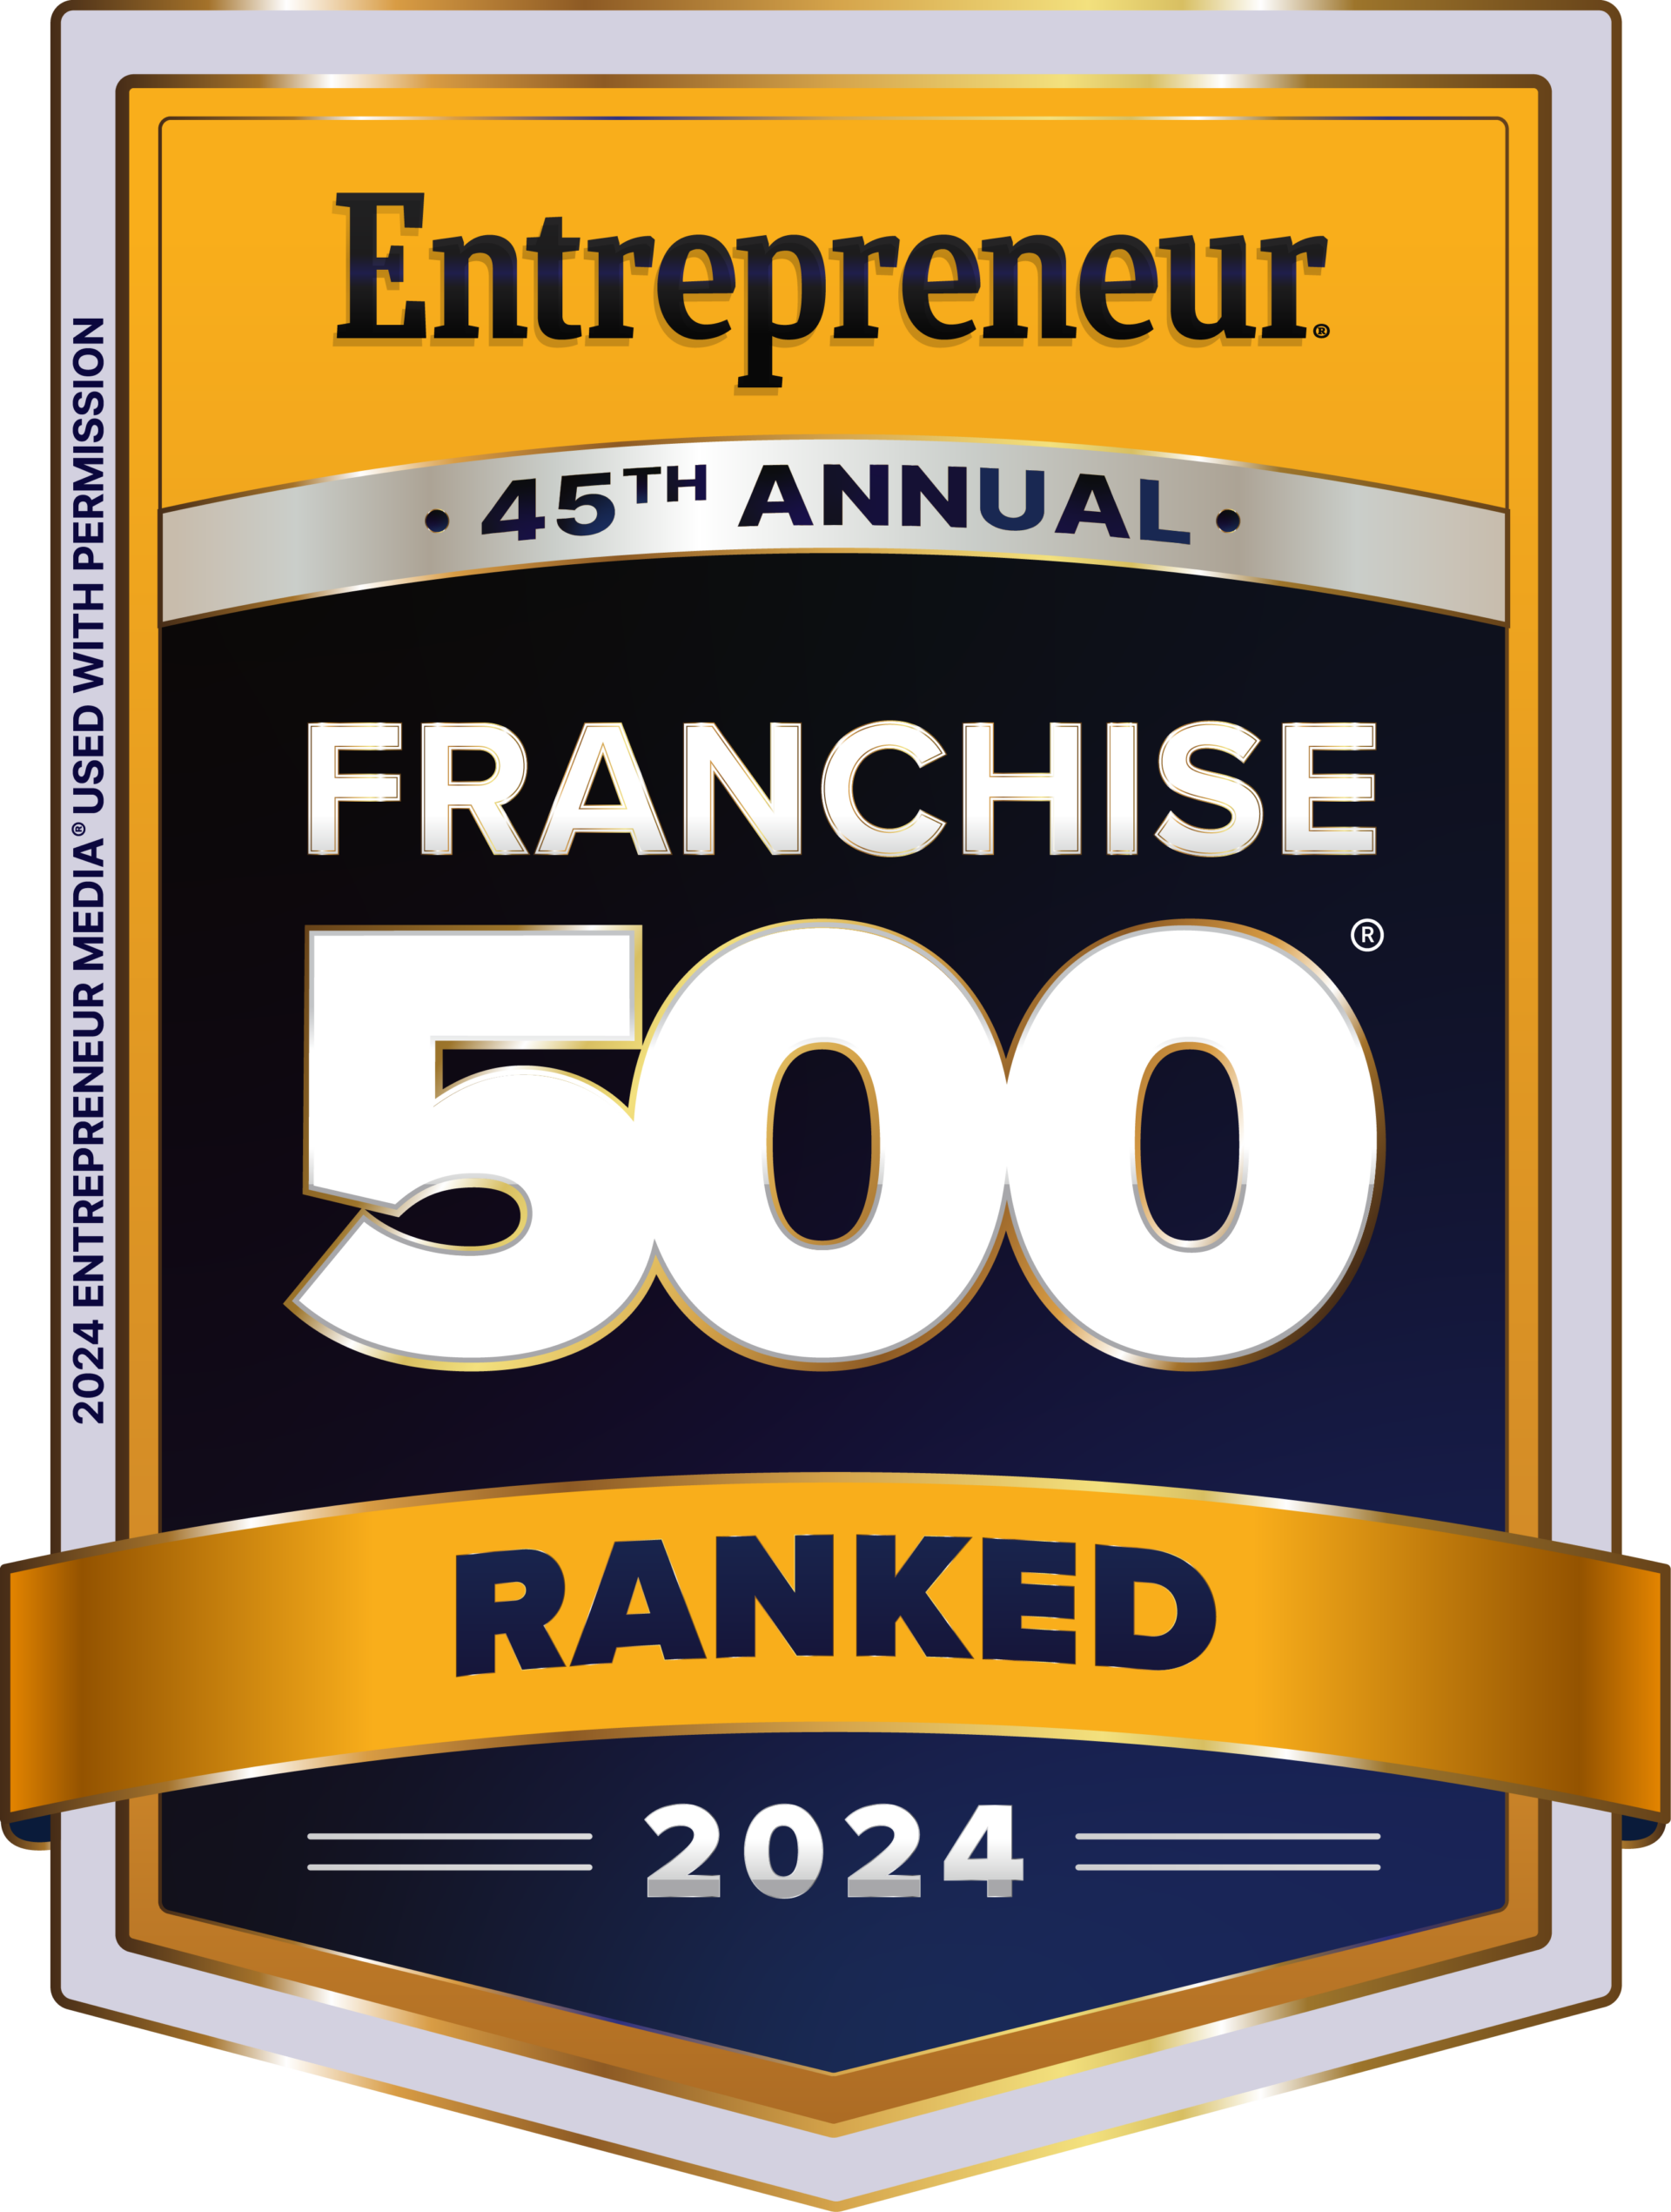 Entrepreneur FRANCHISE 500 2024